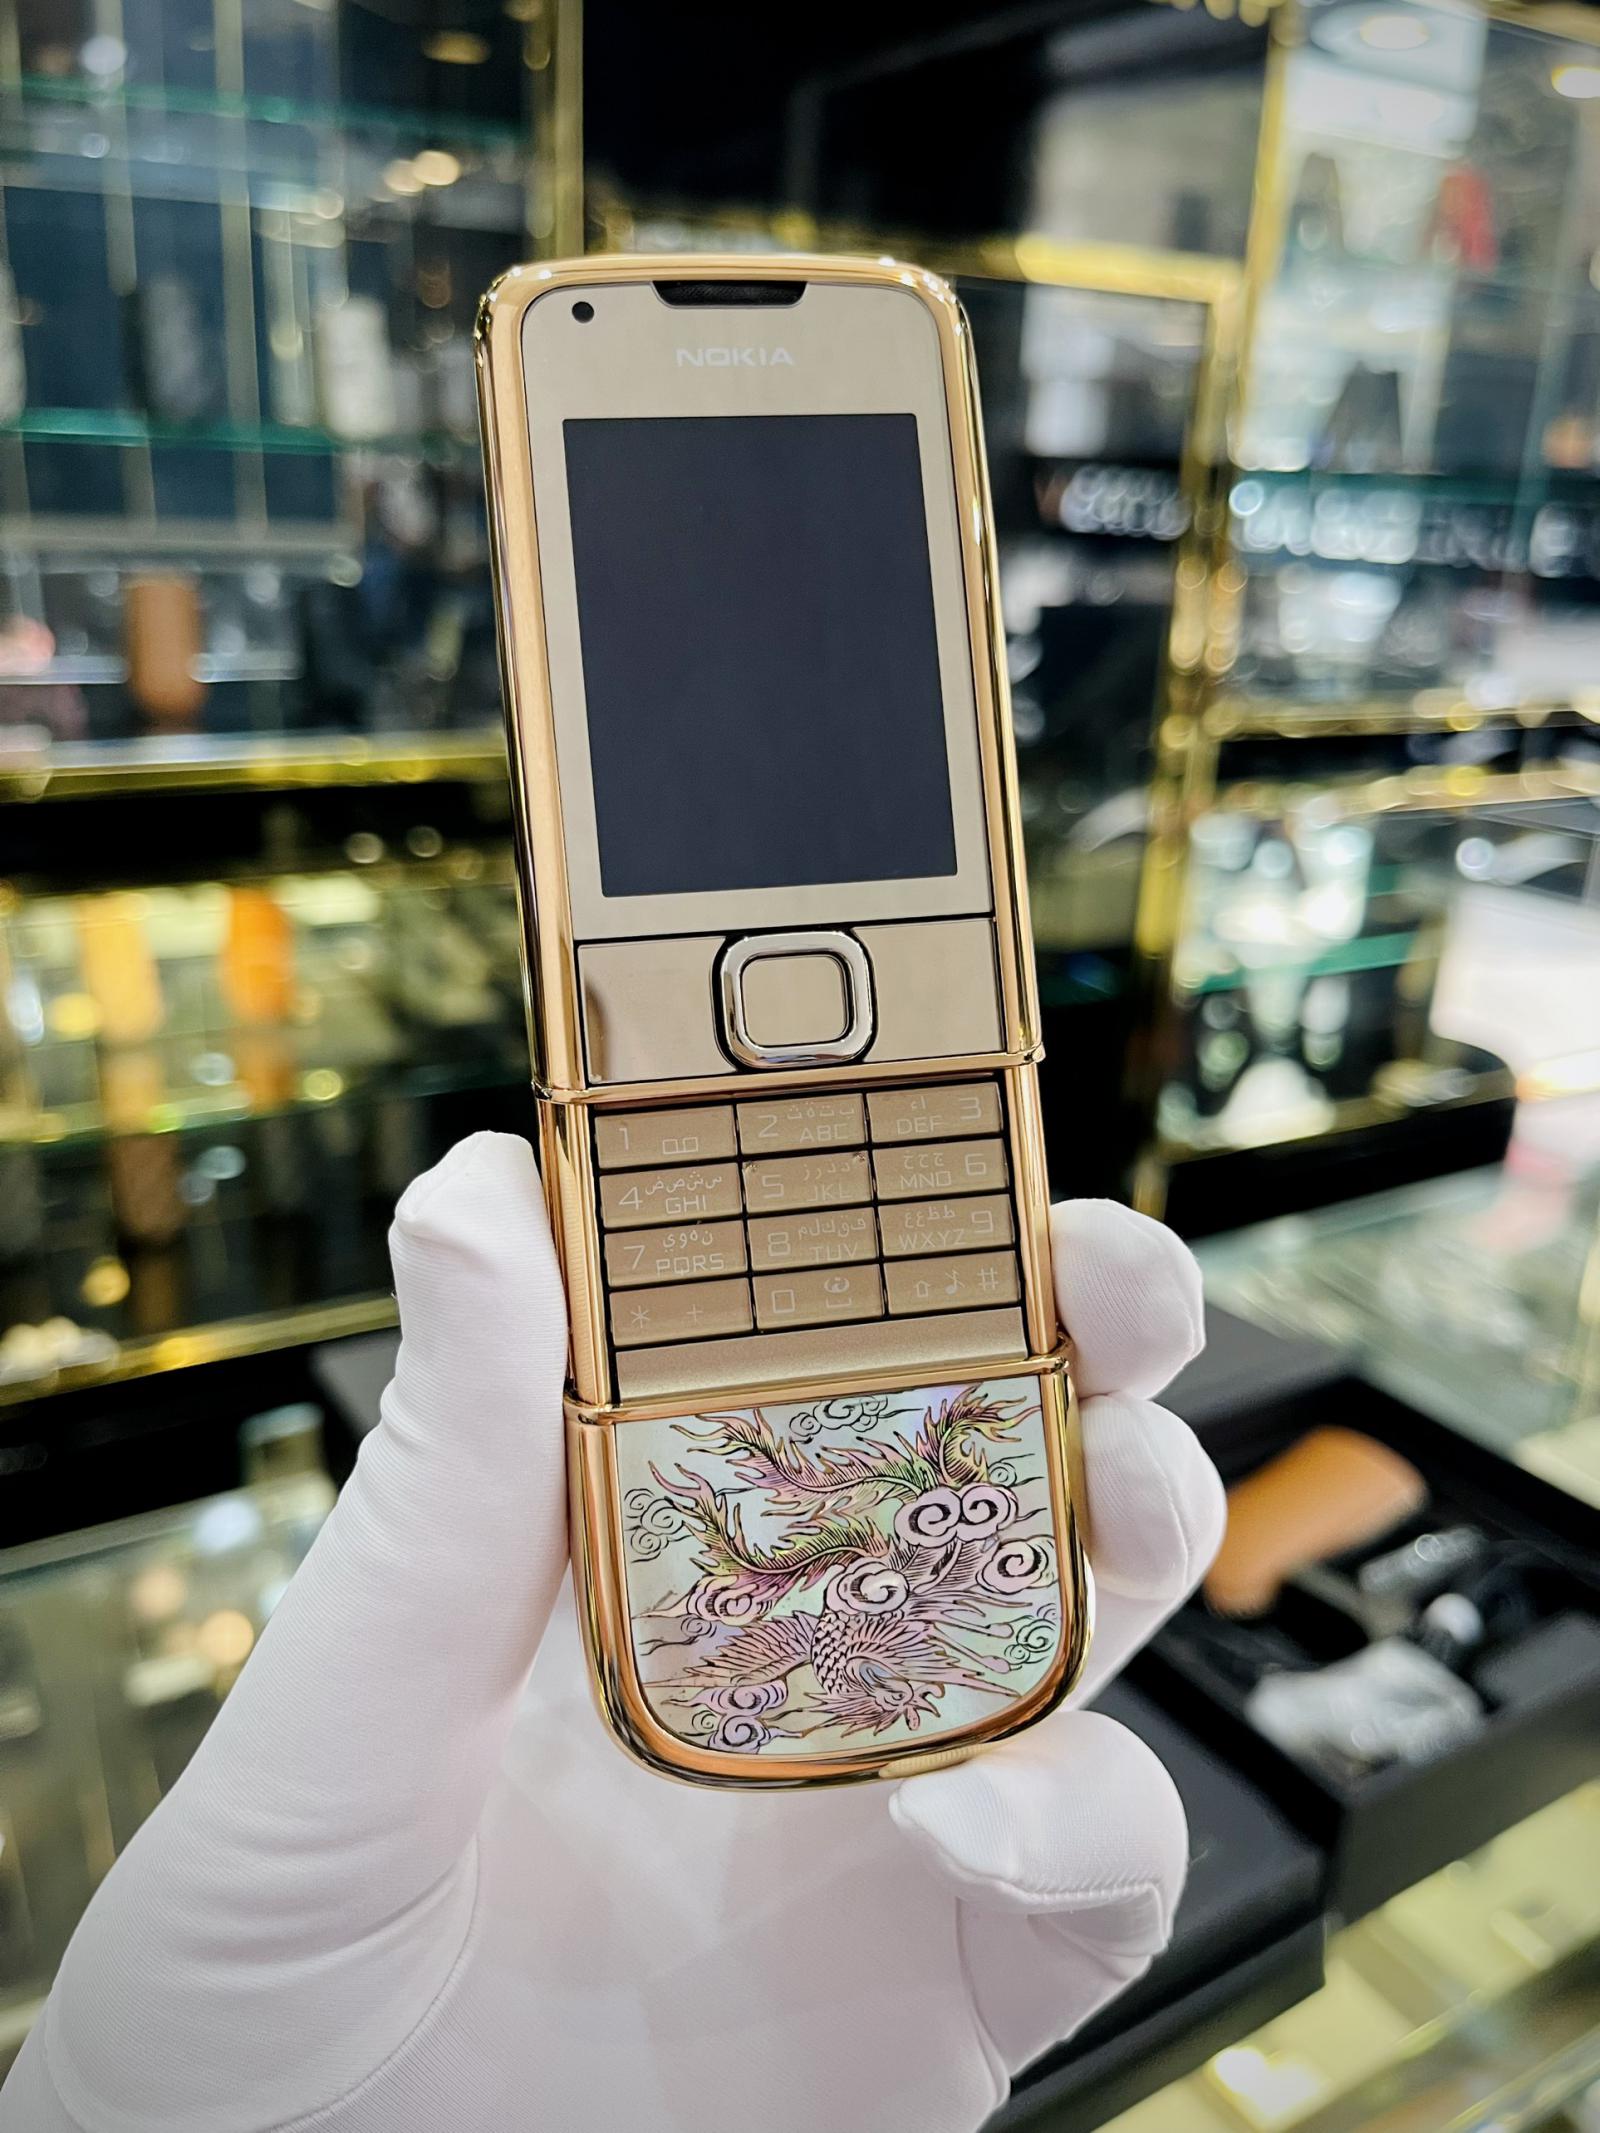 Nokia 8800 Vàng Hồng: Thiết kế mềm mại với màu sắc vàng hồng sang trọng, chiếc điện thoại Nokia 8800 Vàng Hồng sẽ làm say mê bất kỳ ai. Tham khảo hình ảnh để khám phá sự tinh tế và đẳng cấp của sản phẩm này.